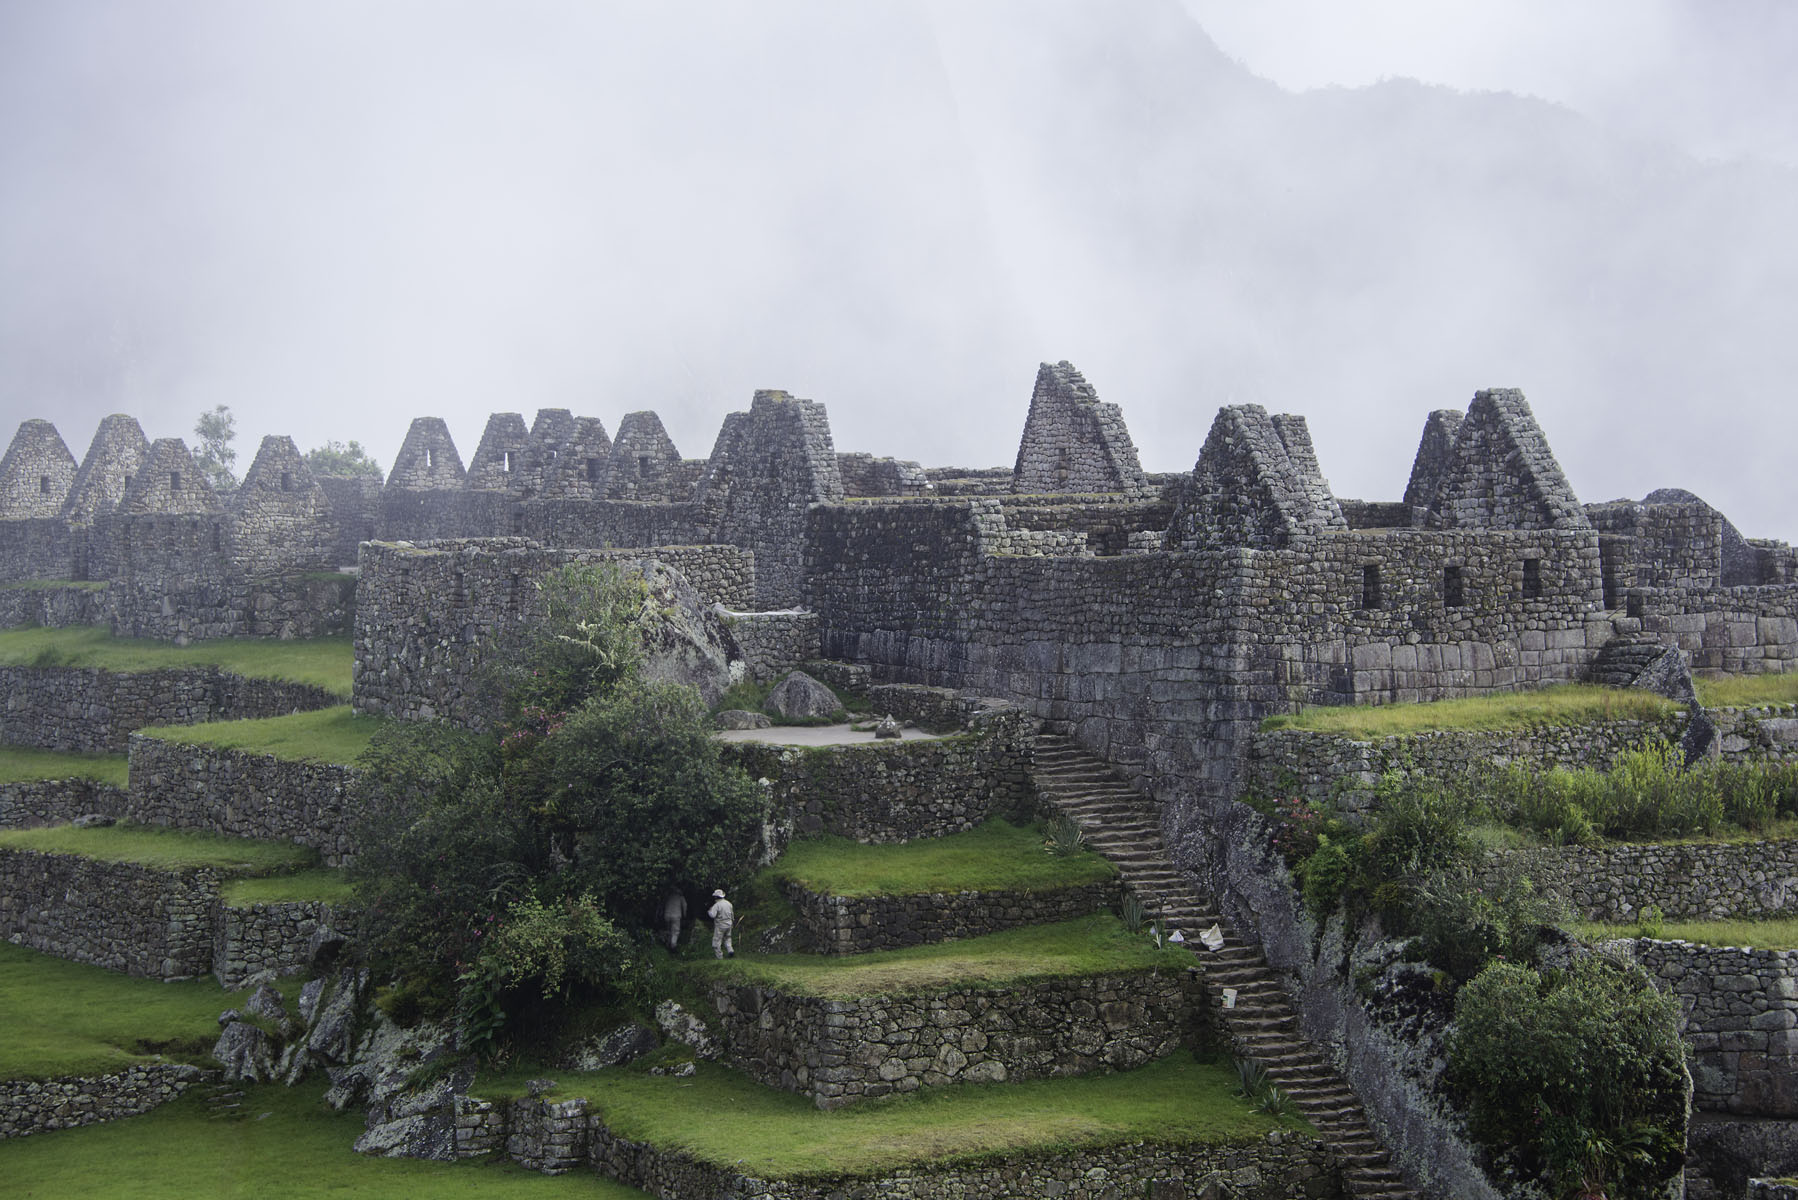 Machu Picchu Buildings in the Fog